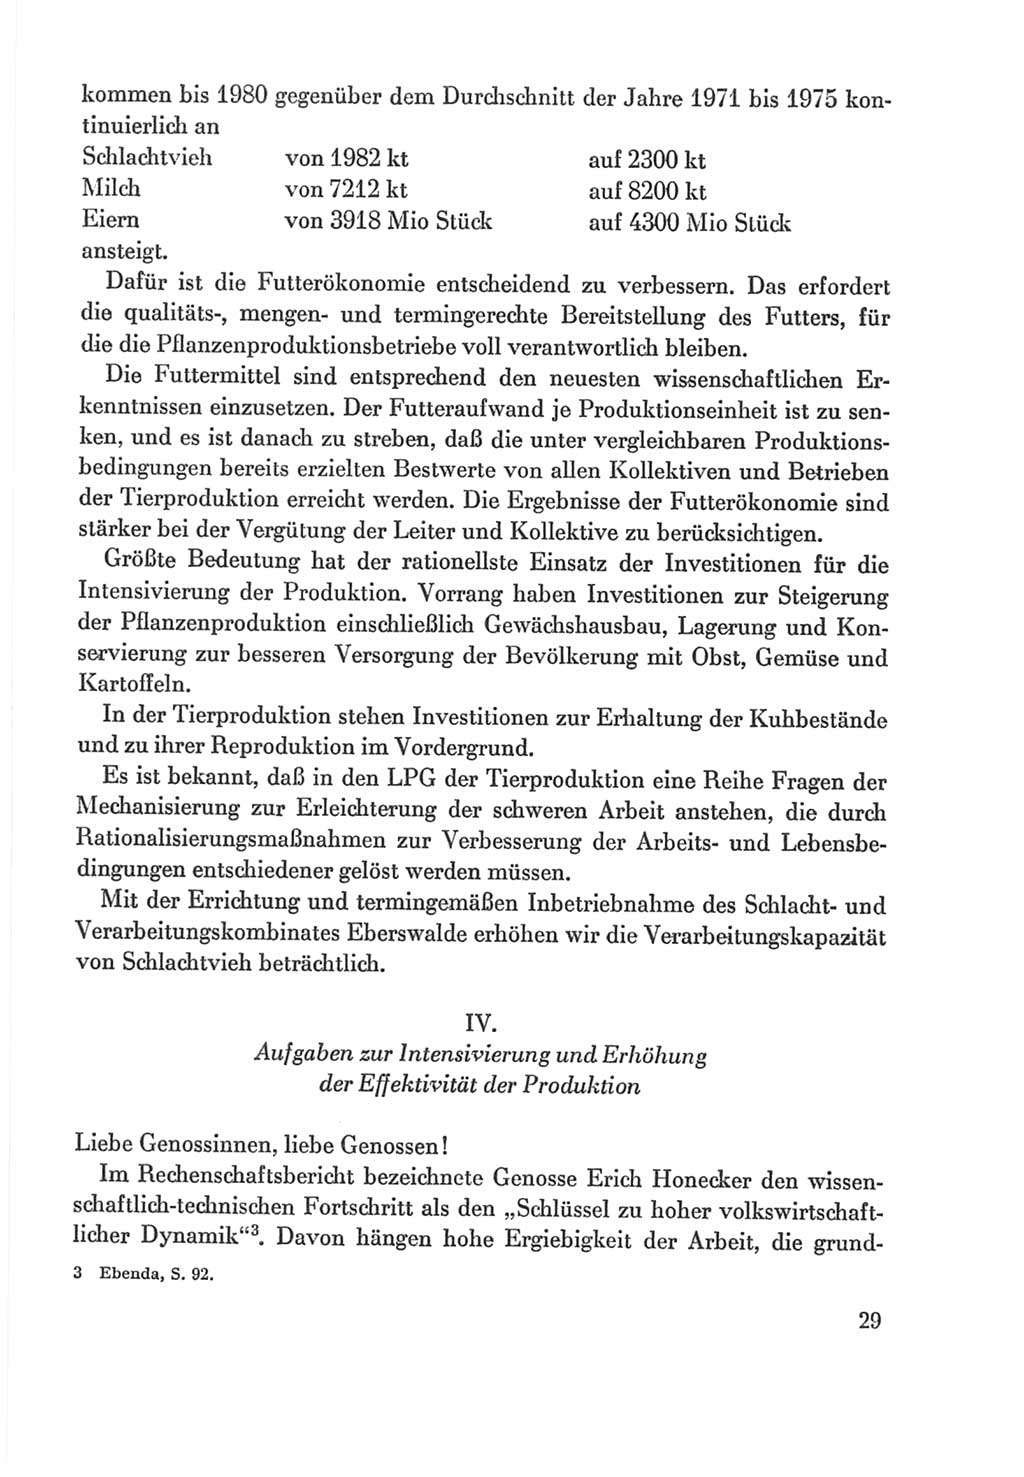 Protokoll der Verhandlungen des Ⅸ. Parteitages der Sozialistischen Einheitspartei Deutschlands (SED) [Deutsche Demokratische Republik (DDR)] 1976, Band 2, Seite 29 (Prot. Verh. Ⅸ. PT SED DDR 1976, Bd. 2, S. 29)